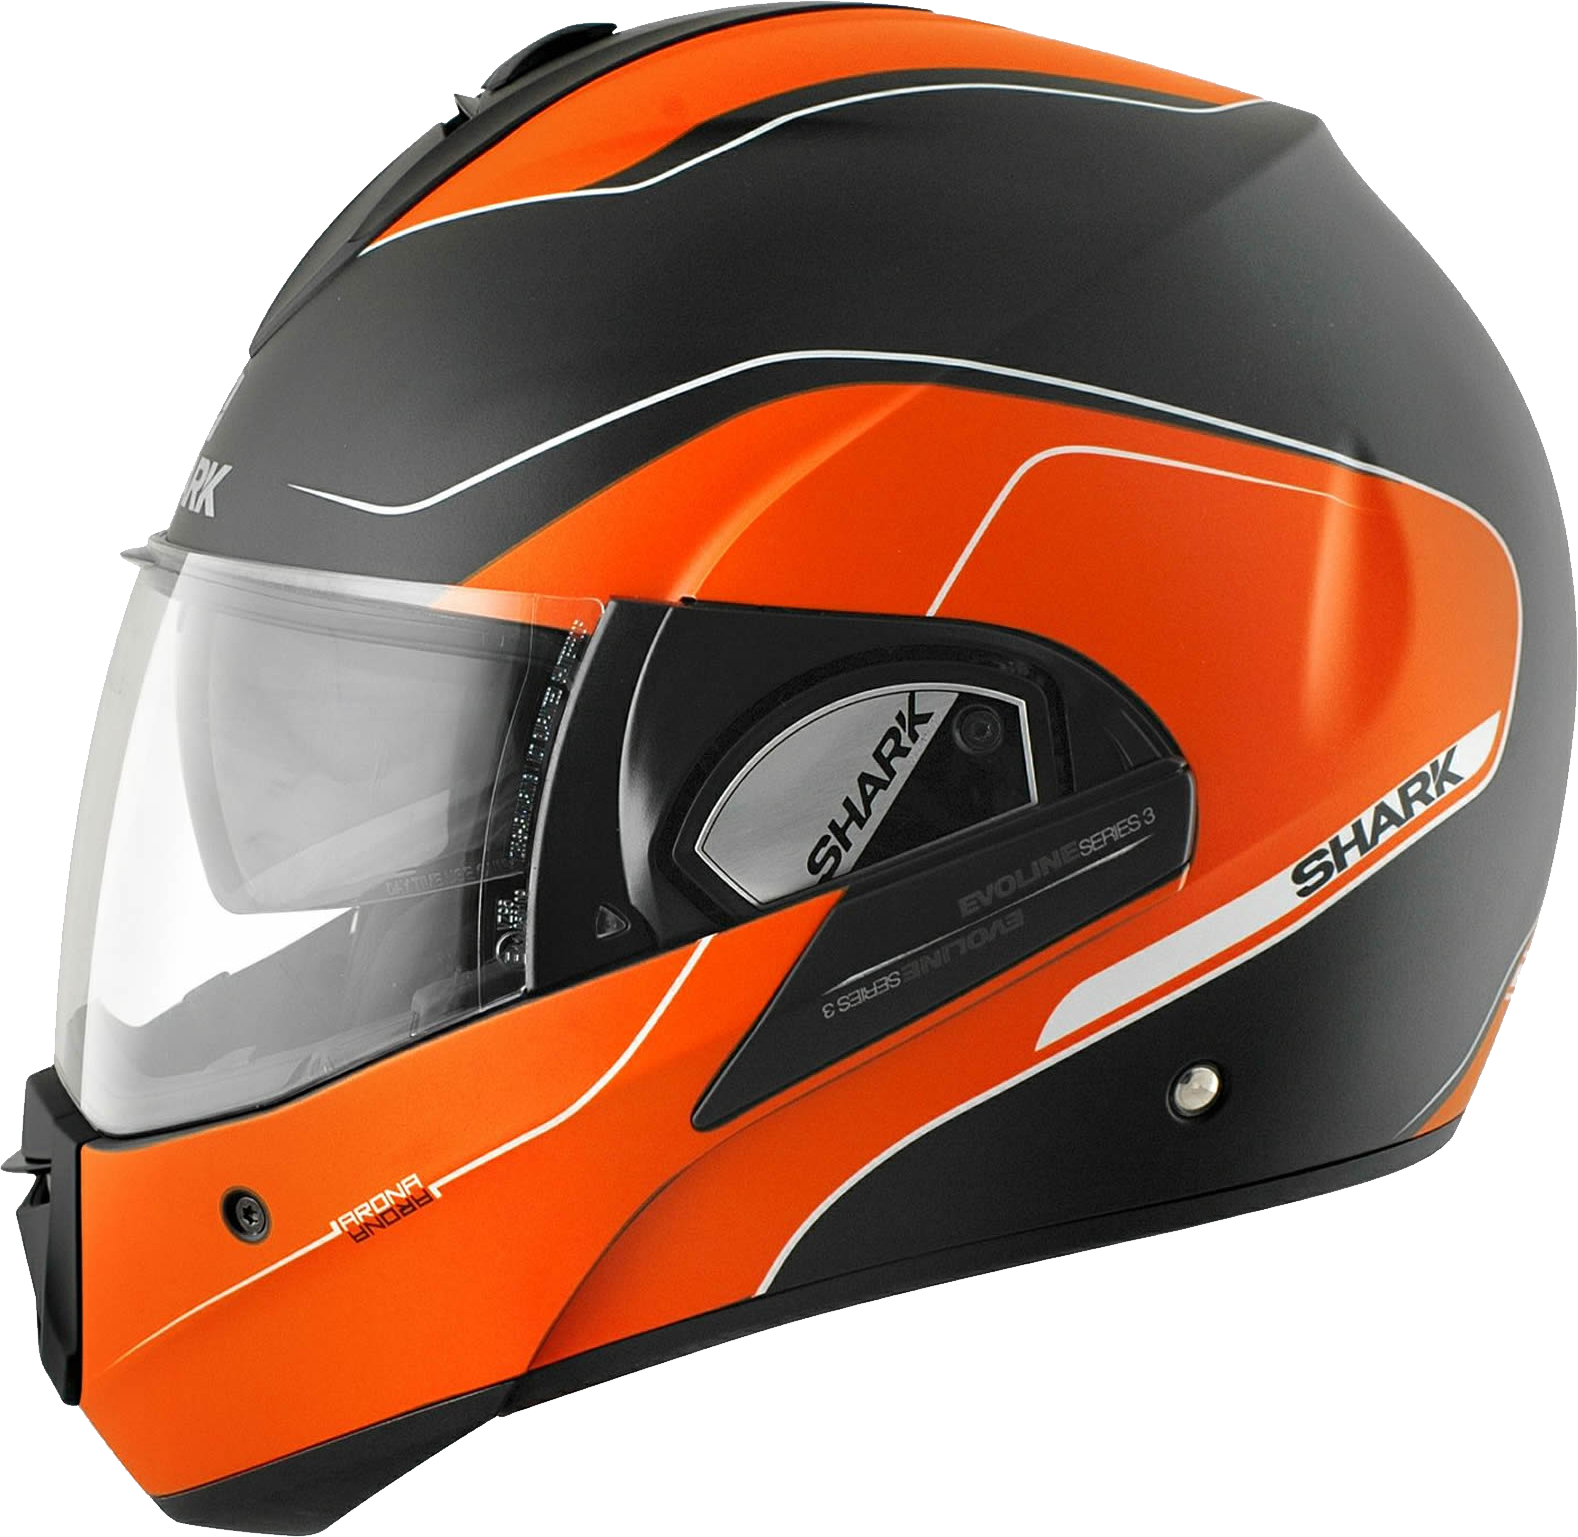 Motorcycle helmet PNG